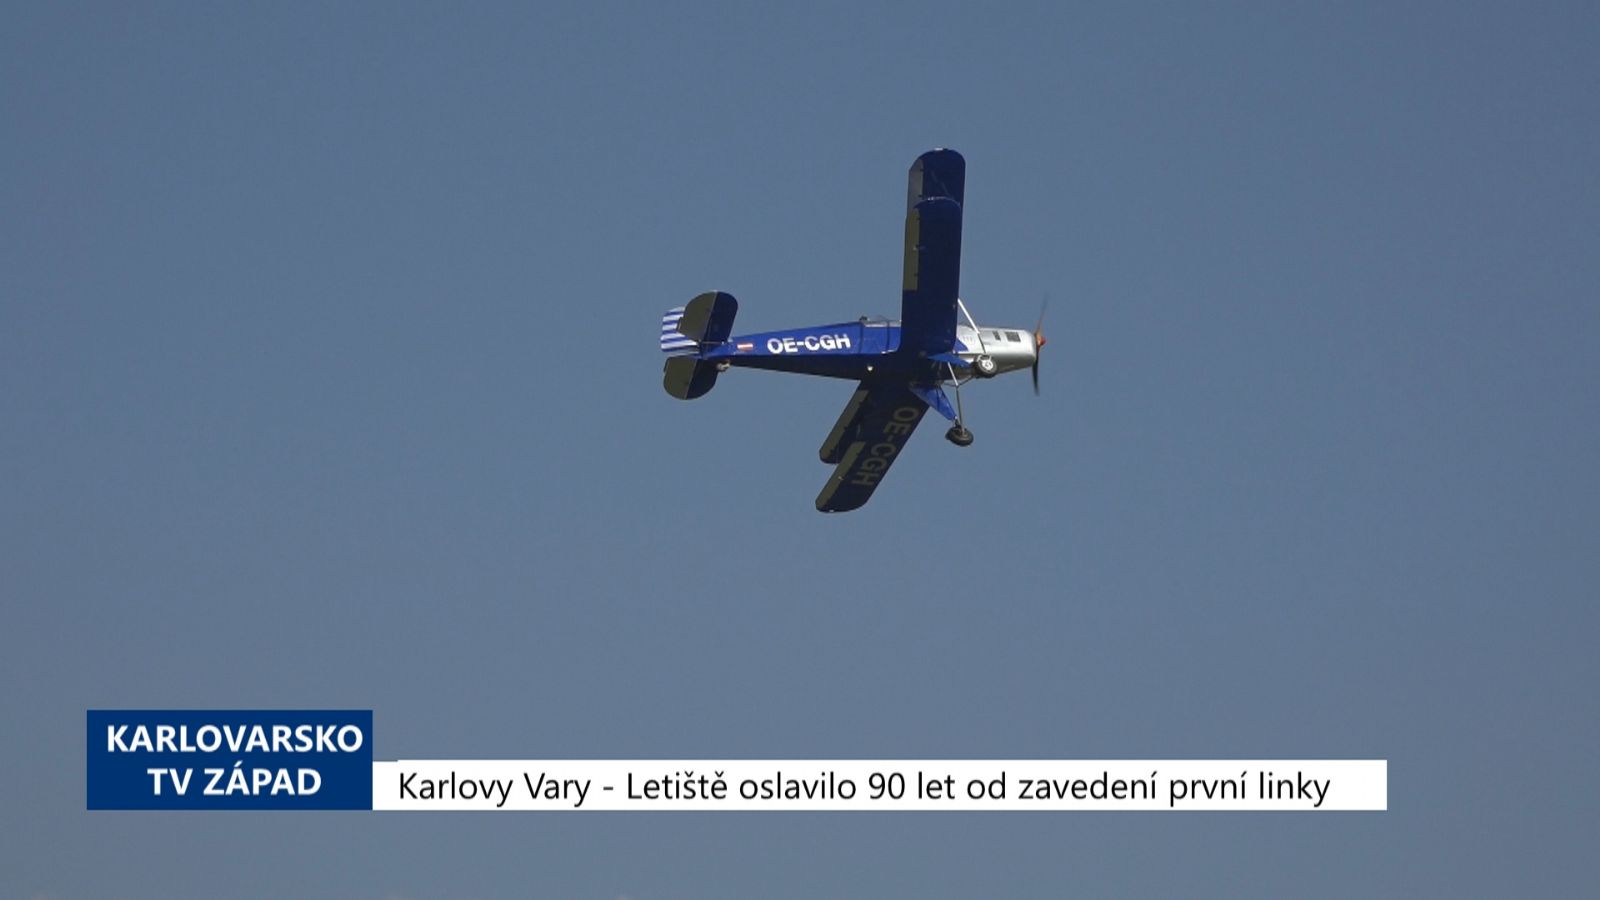 Karlovy Vary: Letiště oslavilo 90 let od zavedení první linky (TV Západ)	